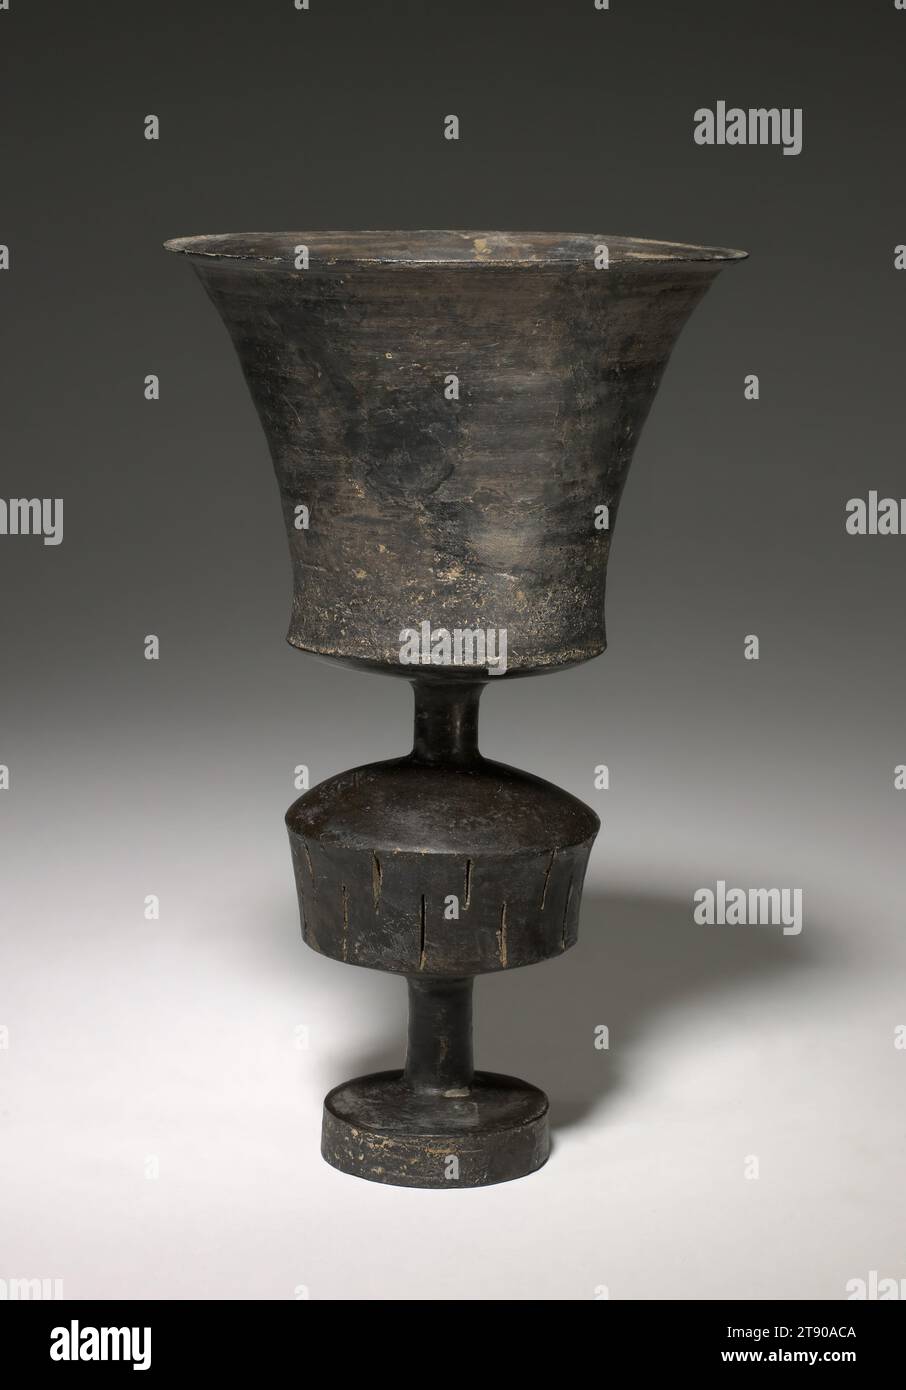 Stängelbecher, ca. 2700-2100 v. Chr., 8 1/2 x 5 1/4 x 5 1/4 Zoll (21,59 x 13,34 x 13,34 cm), brüniertes schwarzes Steingut, China, 27. Bis 22. Jahrhundert v. Chr., als 1930 erstmals markante schwarze Waren ausgegraben wurden, wurde die neolithische Kultur, die für ihre Produktion verantwortlich war, Longshan genannt, nach einer nahegelegenen Stadt in der heutigen Provinz Shandong im Nordosten Chinas. Während des dritten Jahrtausends v. Chr. blühte die Longshan-Kultur auf und ihre Handwerker produzierten einige der raffiniertesten und elegantesten Formen aller antiken Kultur. Aus feinkörnigem Ton, der auf einem Töpferrad gedreht wurde Stockfoto